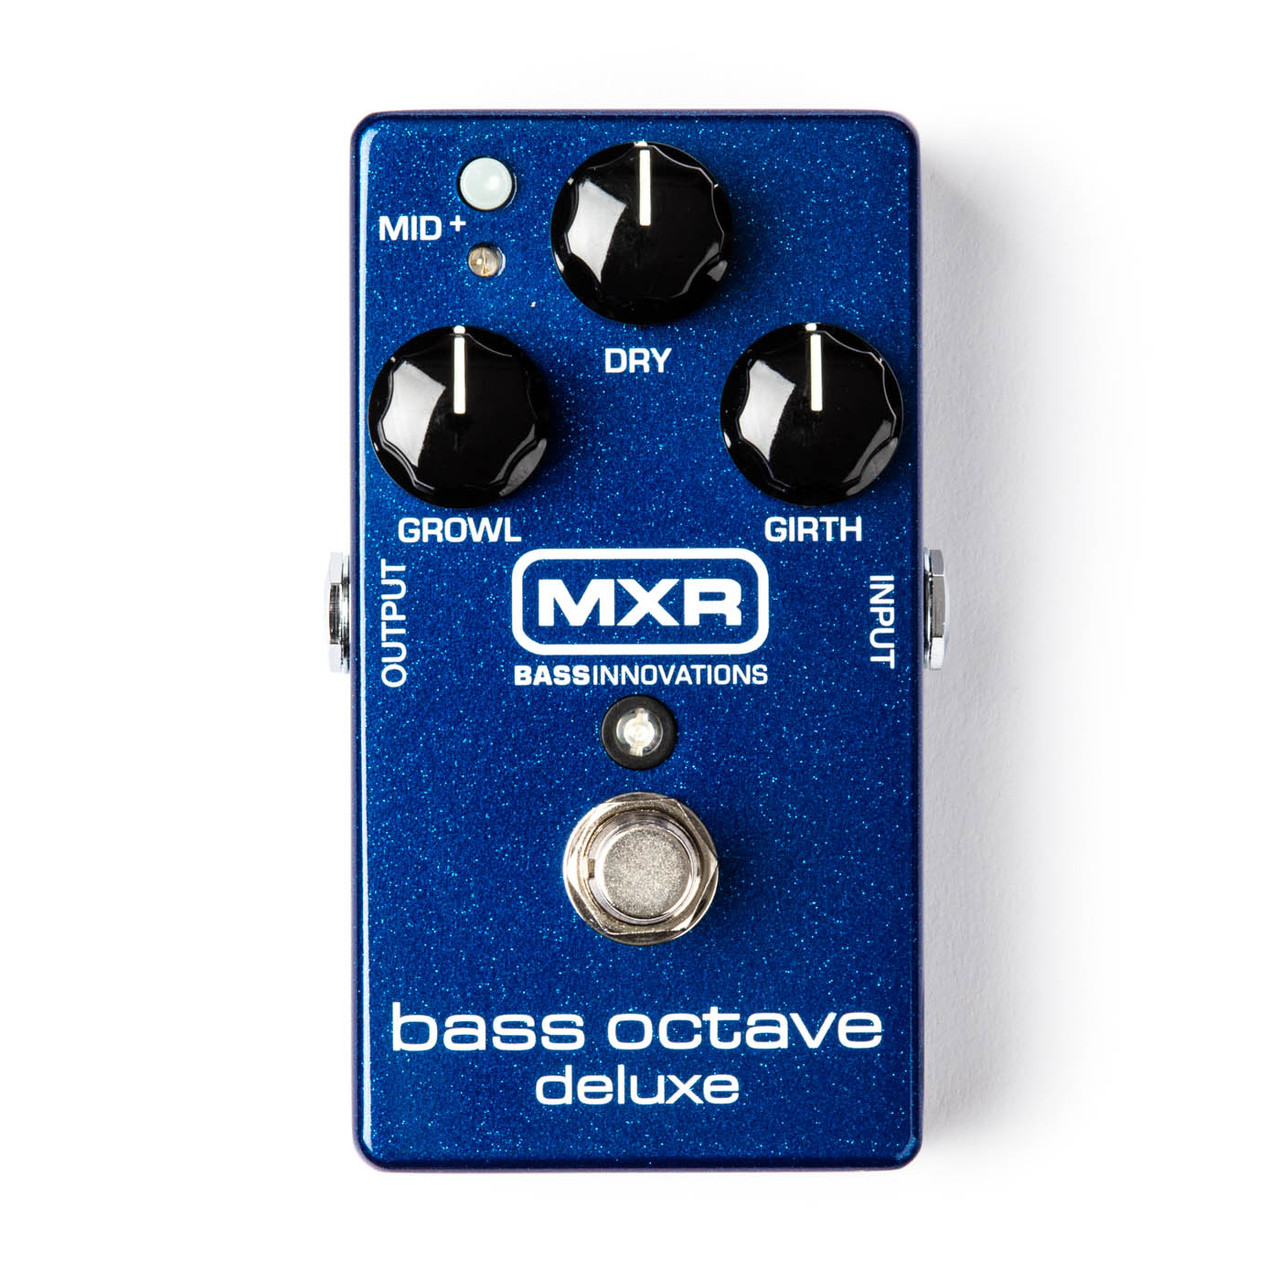 Процессоры эффектов и педали для гитары MXR M288 Bass Octave Deluxe струны ernie ball 2735 slinky cobalt extra bass